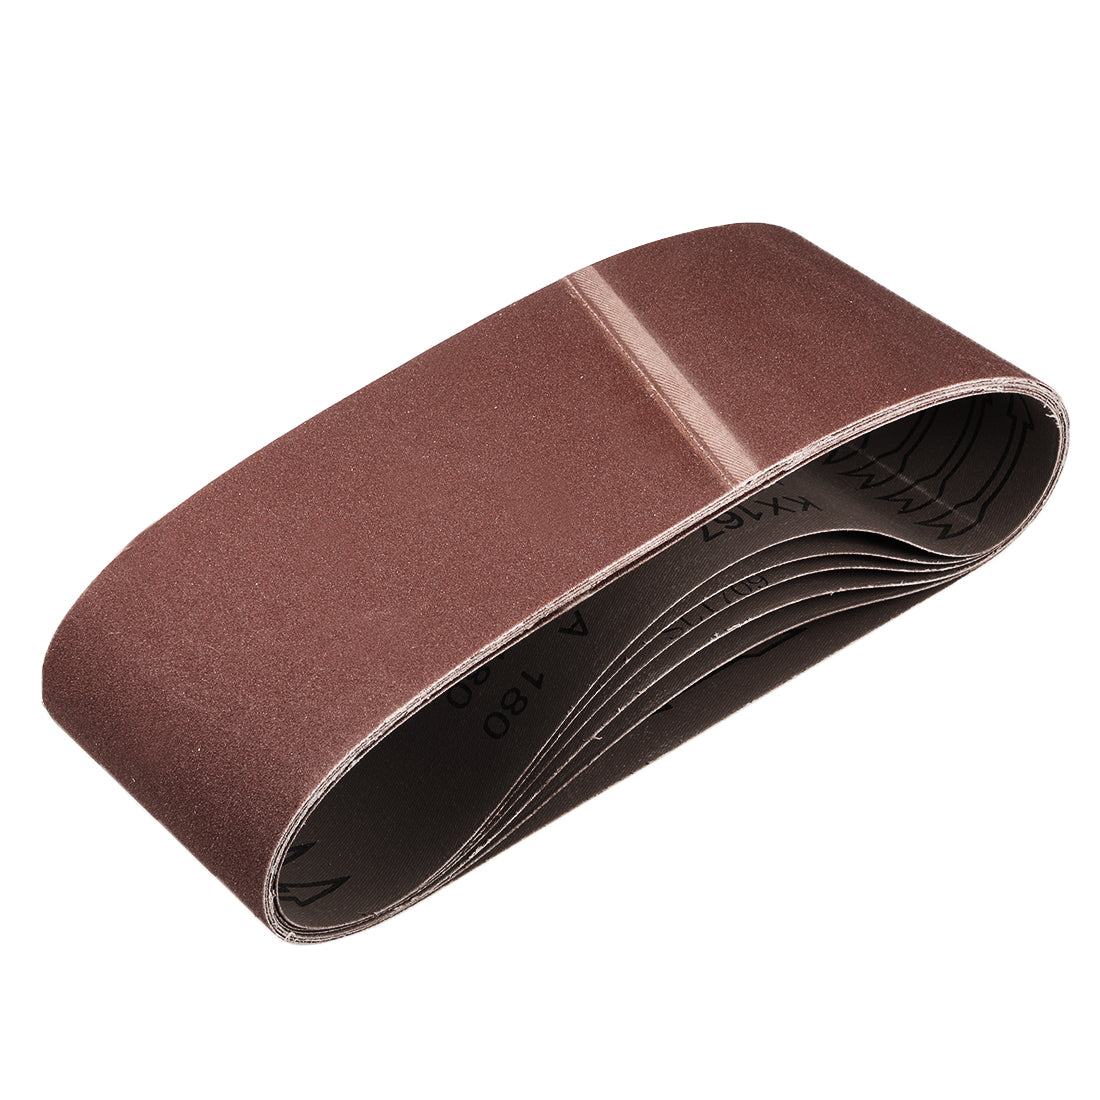 uxcell Uxcell 4" x 24" Abrasive Sanding Belt, 180-Grits Sand Belts for Belt Sander 6pcs